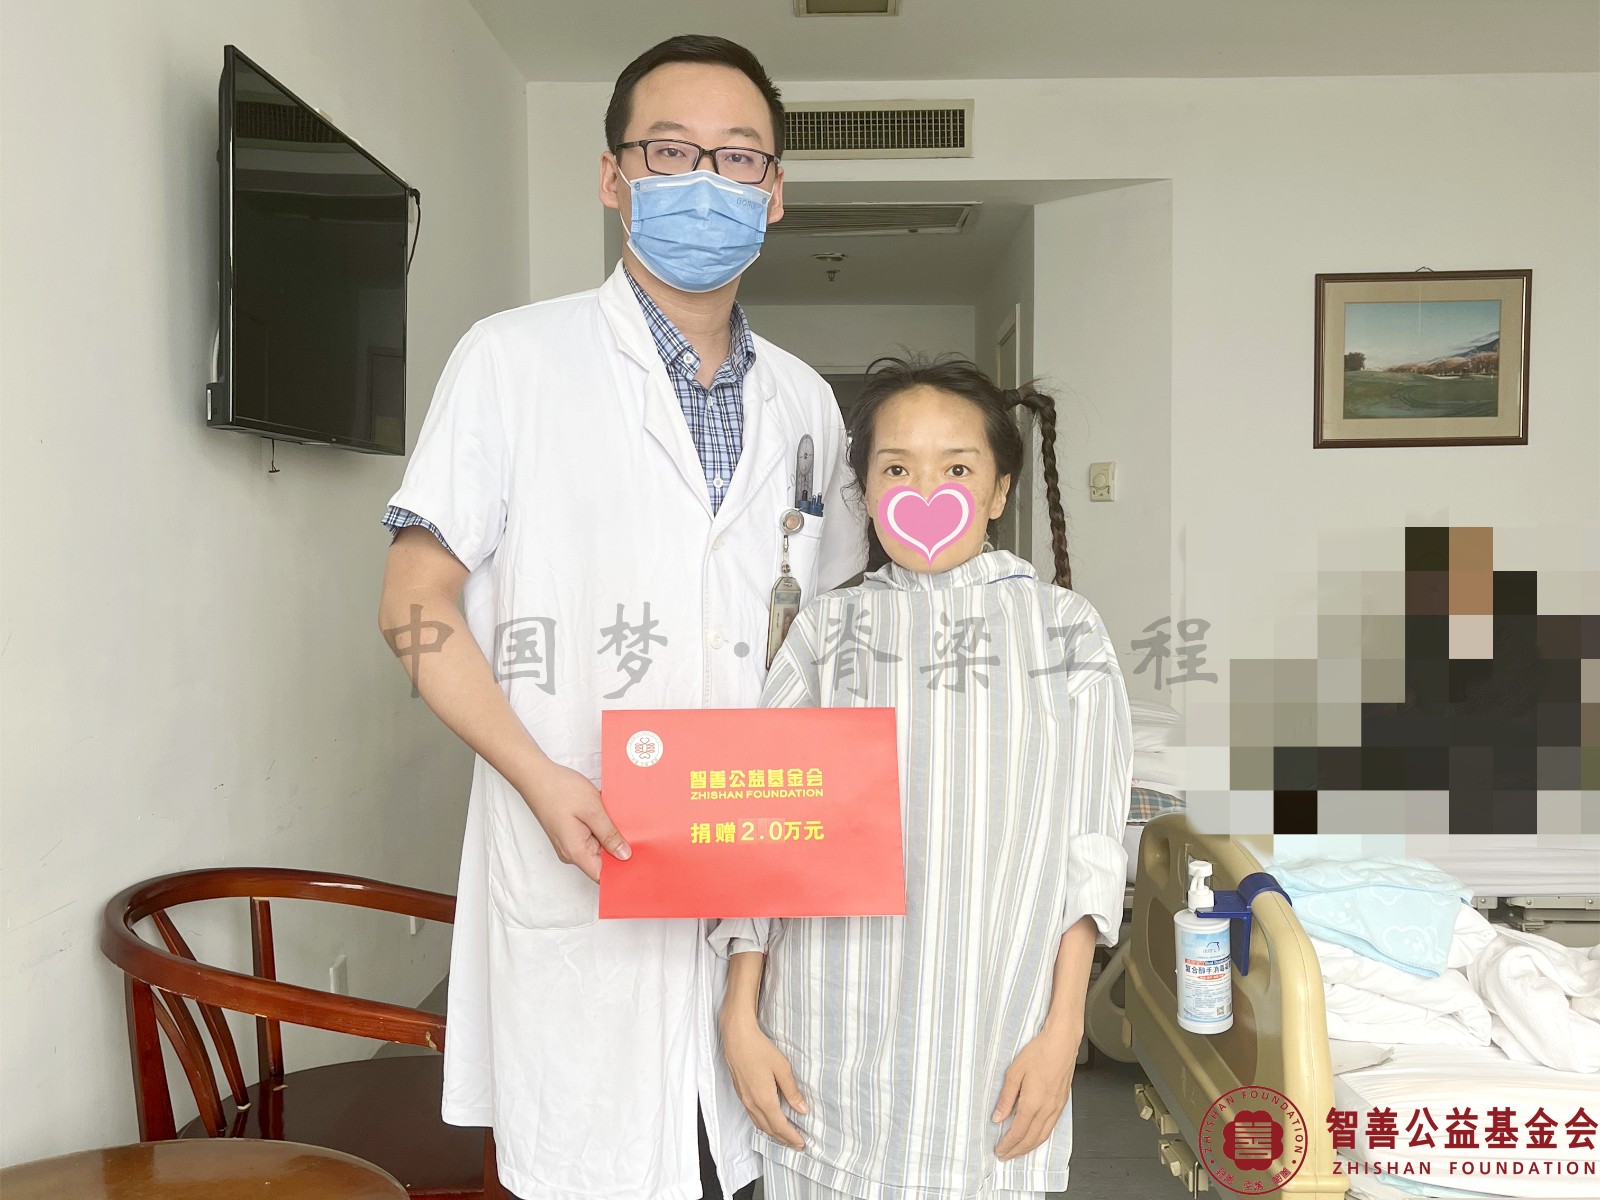 27 战略支援部队特色医学中心张汉青医生将智善公益基金会捐赠的2万元转交给山西阳泉郊区患者小付.jpg